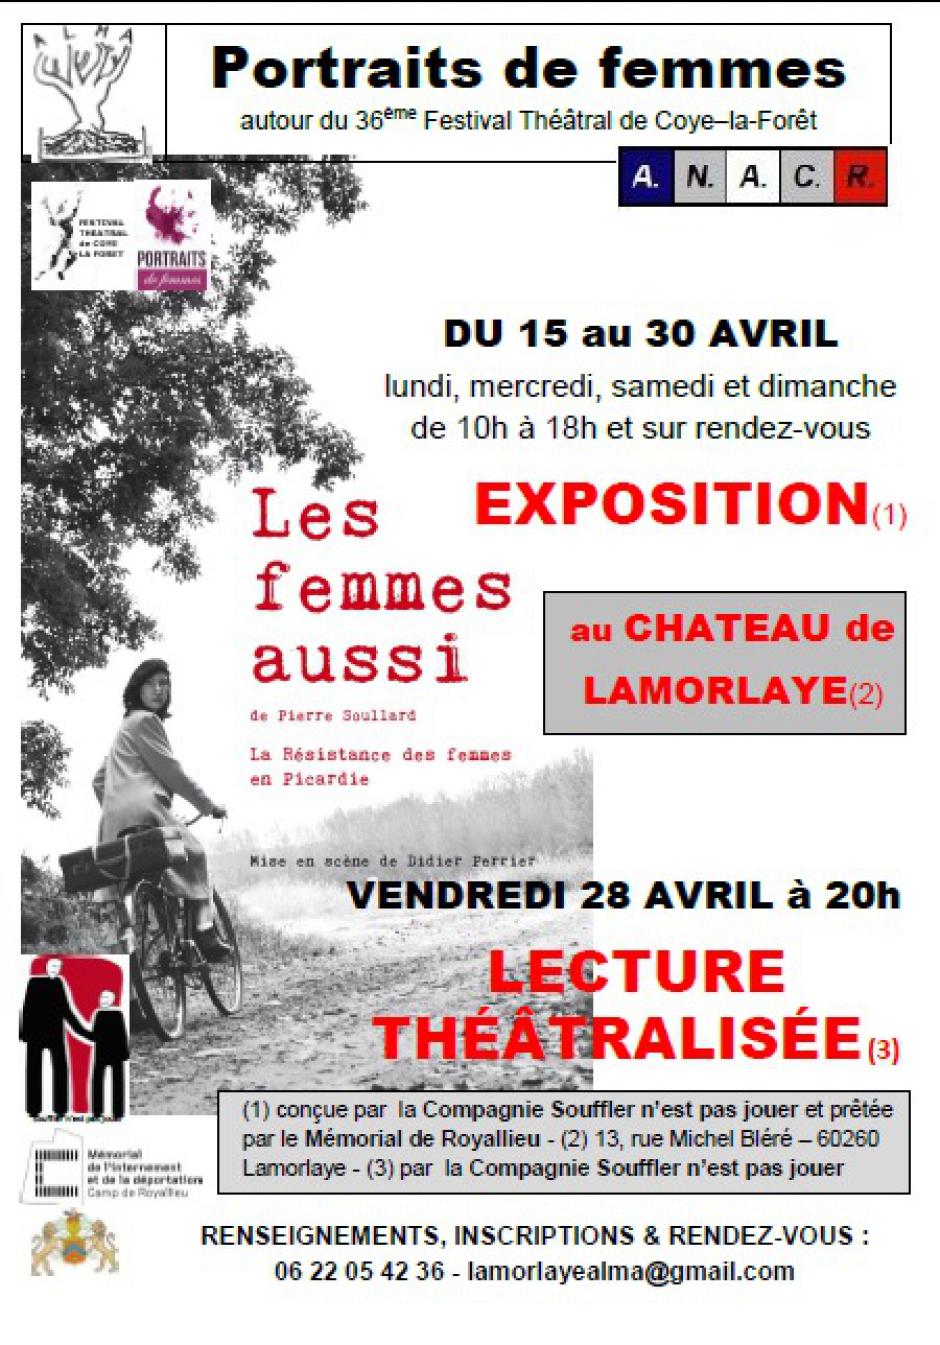 Du 15 au 30 avril, Lamorlaye - ALMA et ANACR Oise-Exposition « Les femmes aussi, la Résistance des femmes de Picardie »